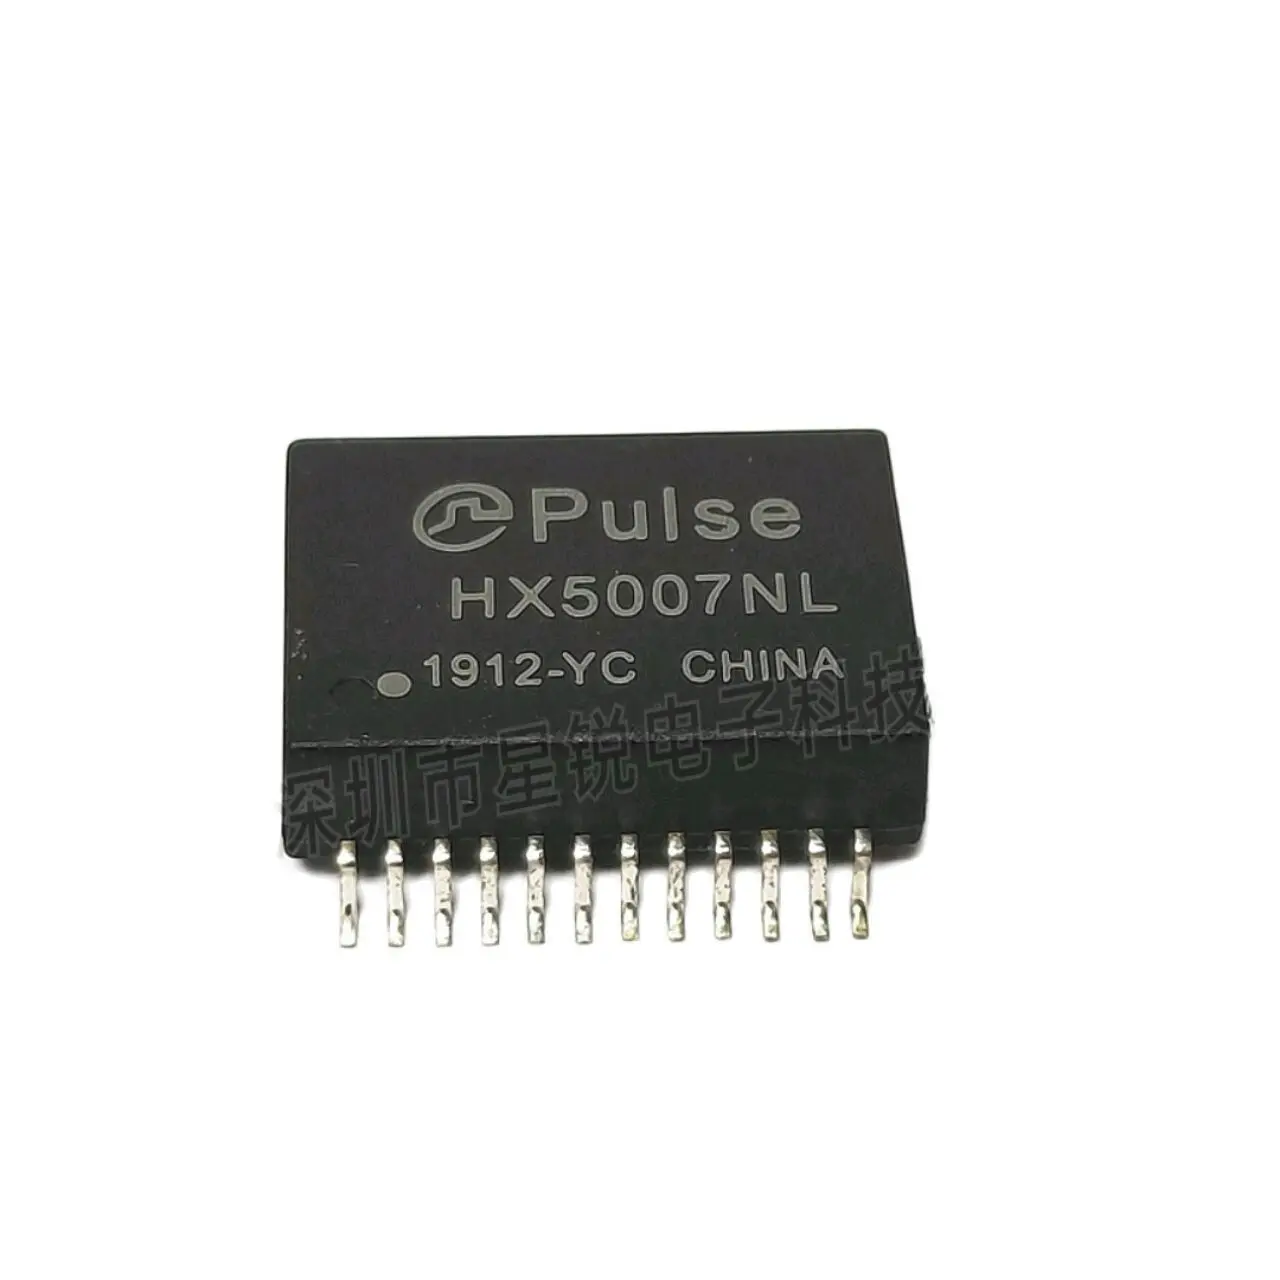 

10pcs/network transformer filter HX5007NL PULSE SOP24 new original spot straight shot quality assurance